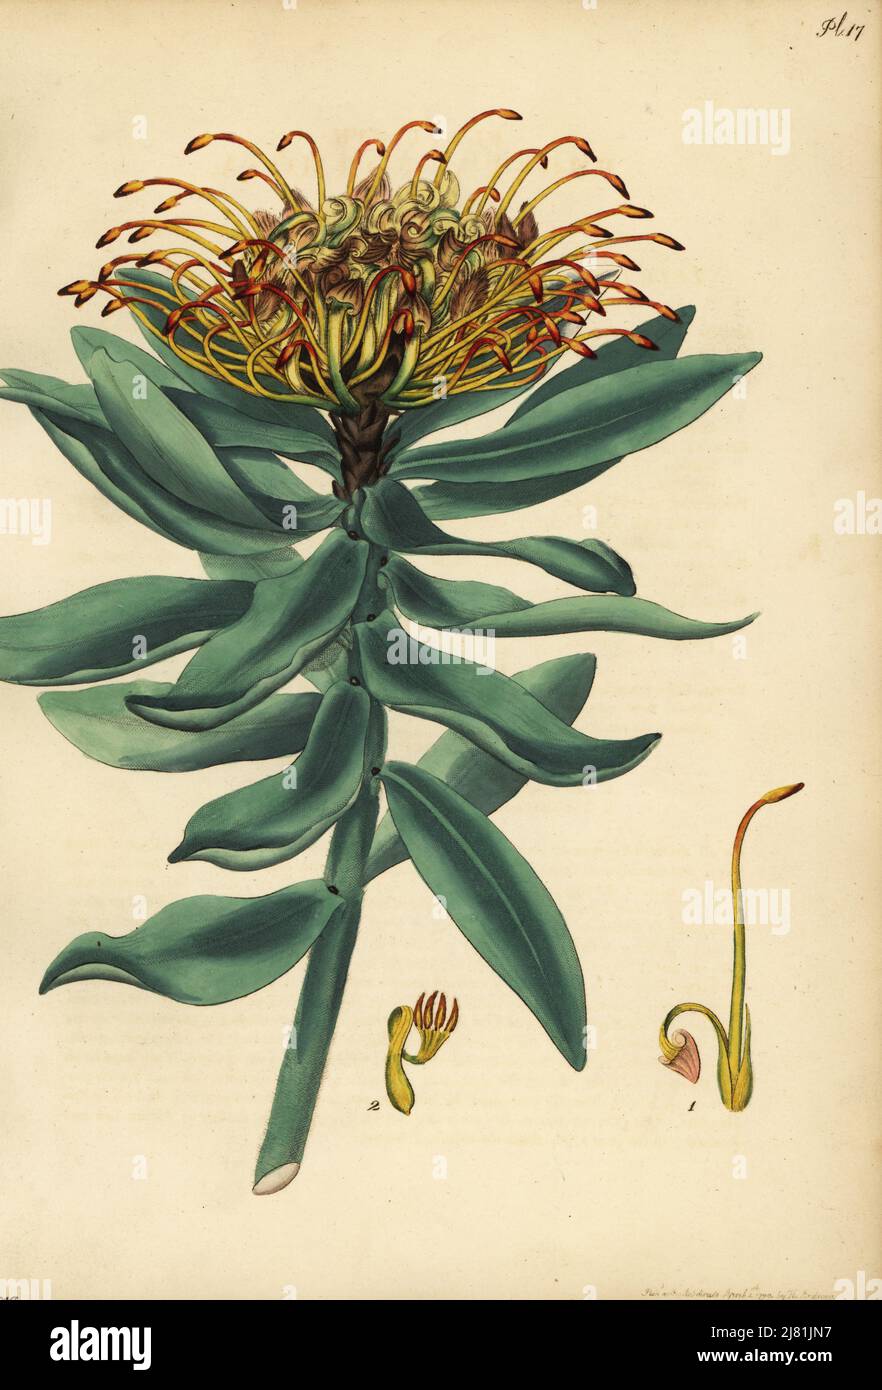 Seidenhaarige Nadelkissen, Leucospermum vestitum. Coronet protea, Protea formosa. Kupferstich gezeichnet, gestochen und handkoloriert von Henry Andrews aus seinem Botanischen Register, Band 1, veröffentlicht 1799 in London. Stockfoto